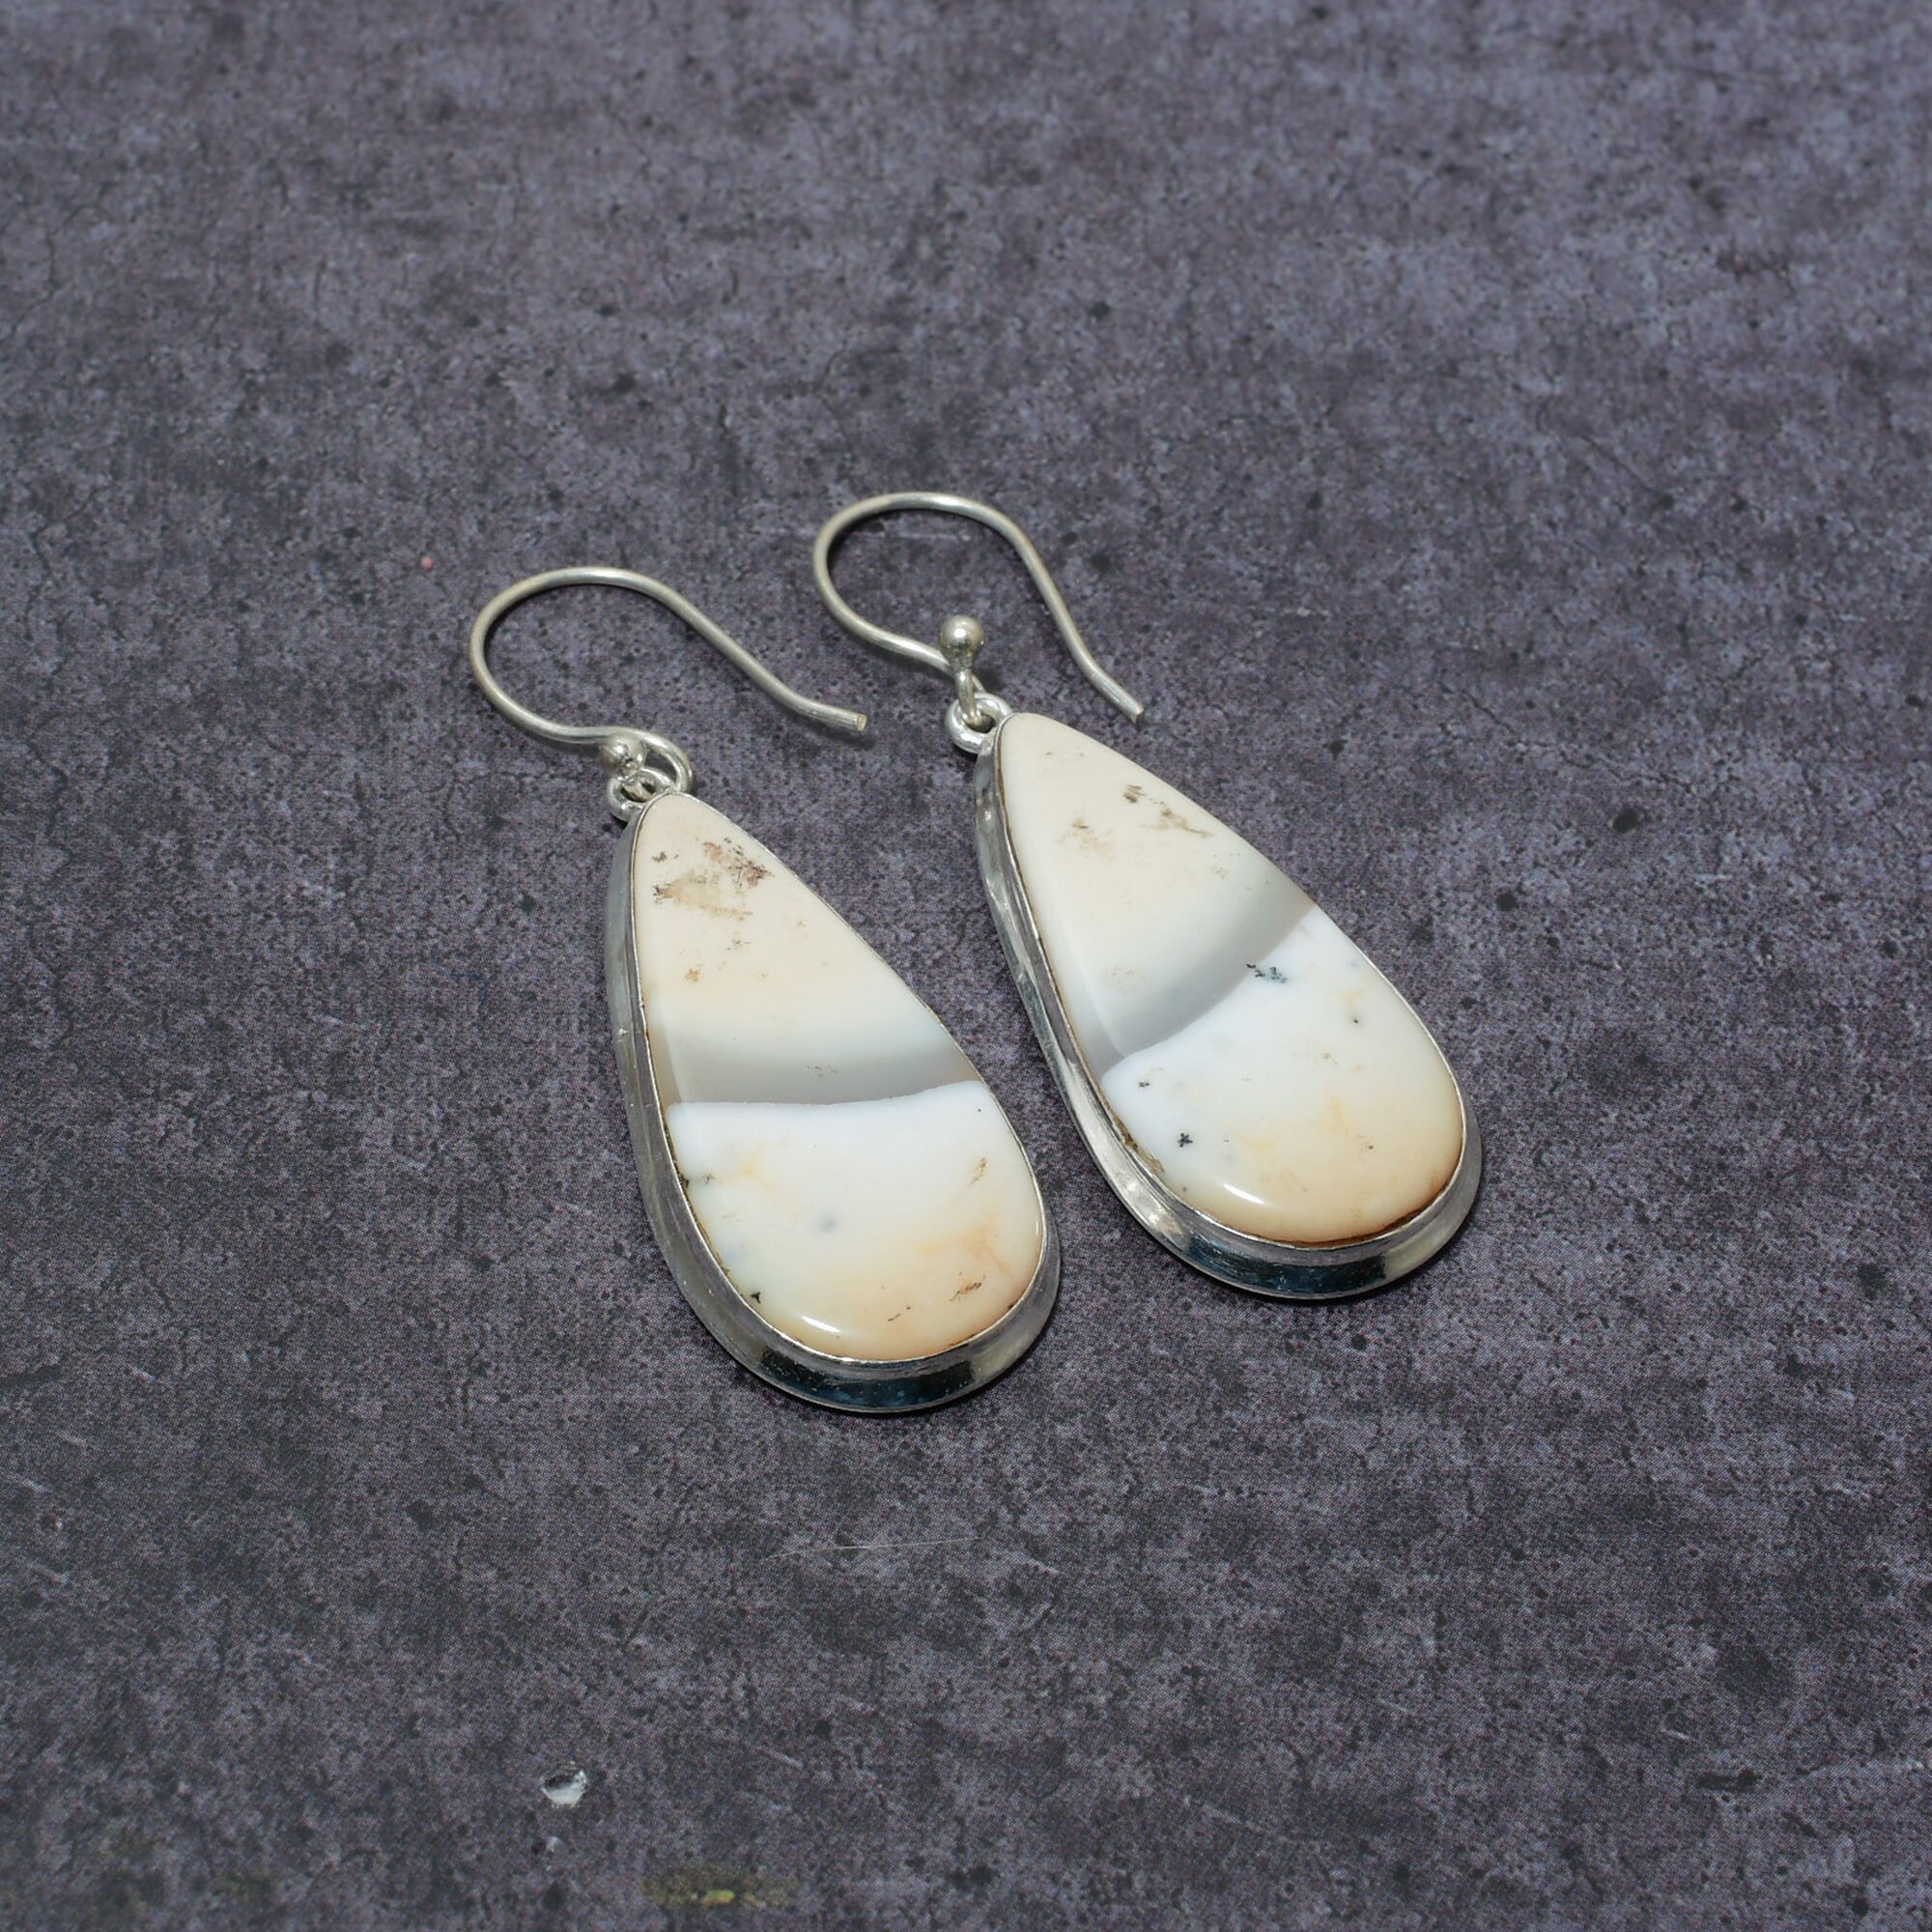 Dendrite Opal Earrings Handmade Silver Earrings Dendrite Opal Gemstone Earrings 925 Sterling Silver Earrings Gift for her Dangle Earrings